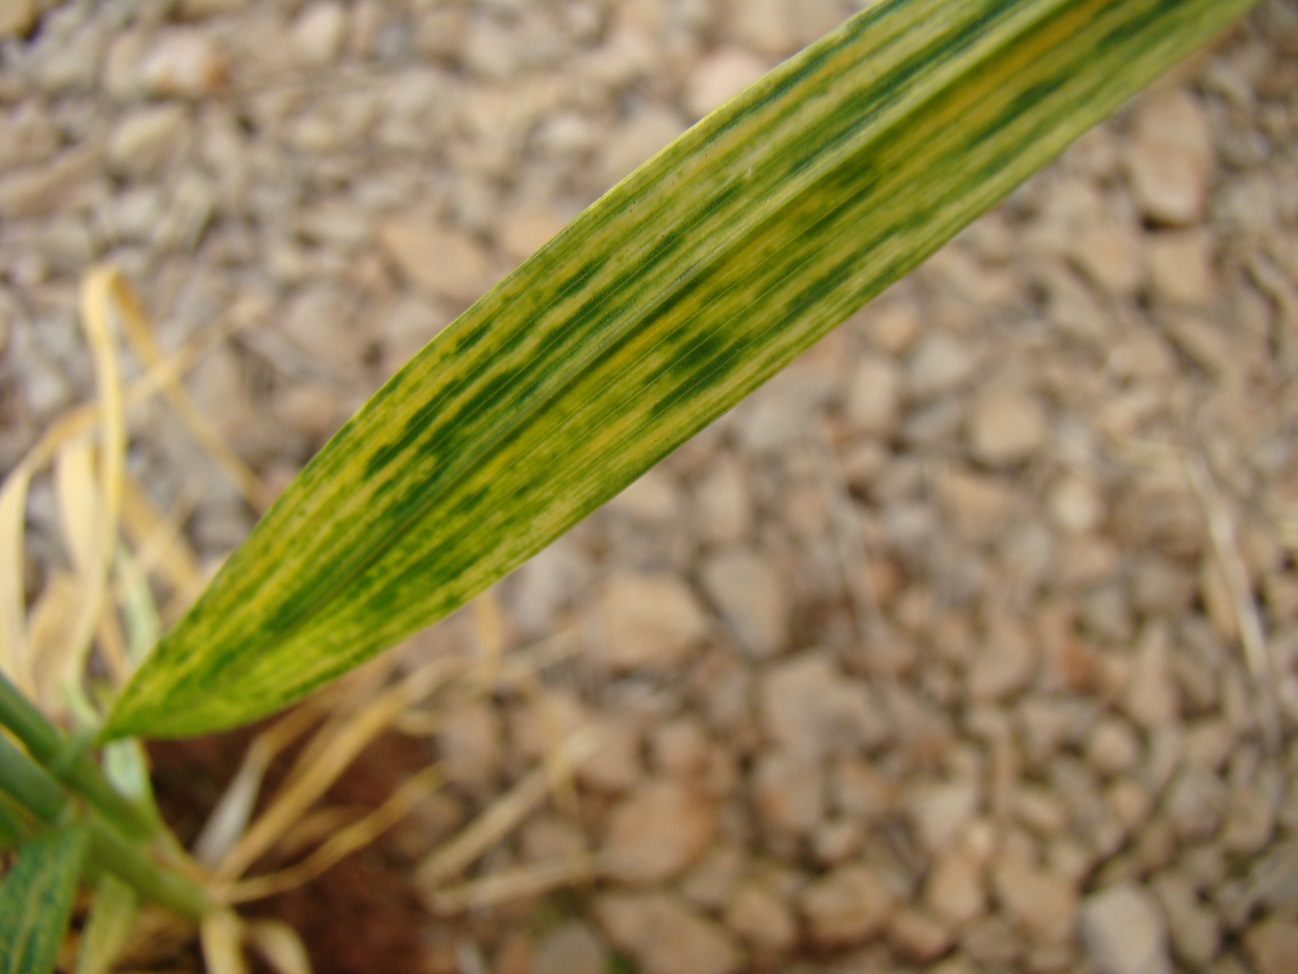 Sintomas de mosaico em folha de trigo causado por Wheat streak mosaic virus. -   Foto Douglas Lau